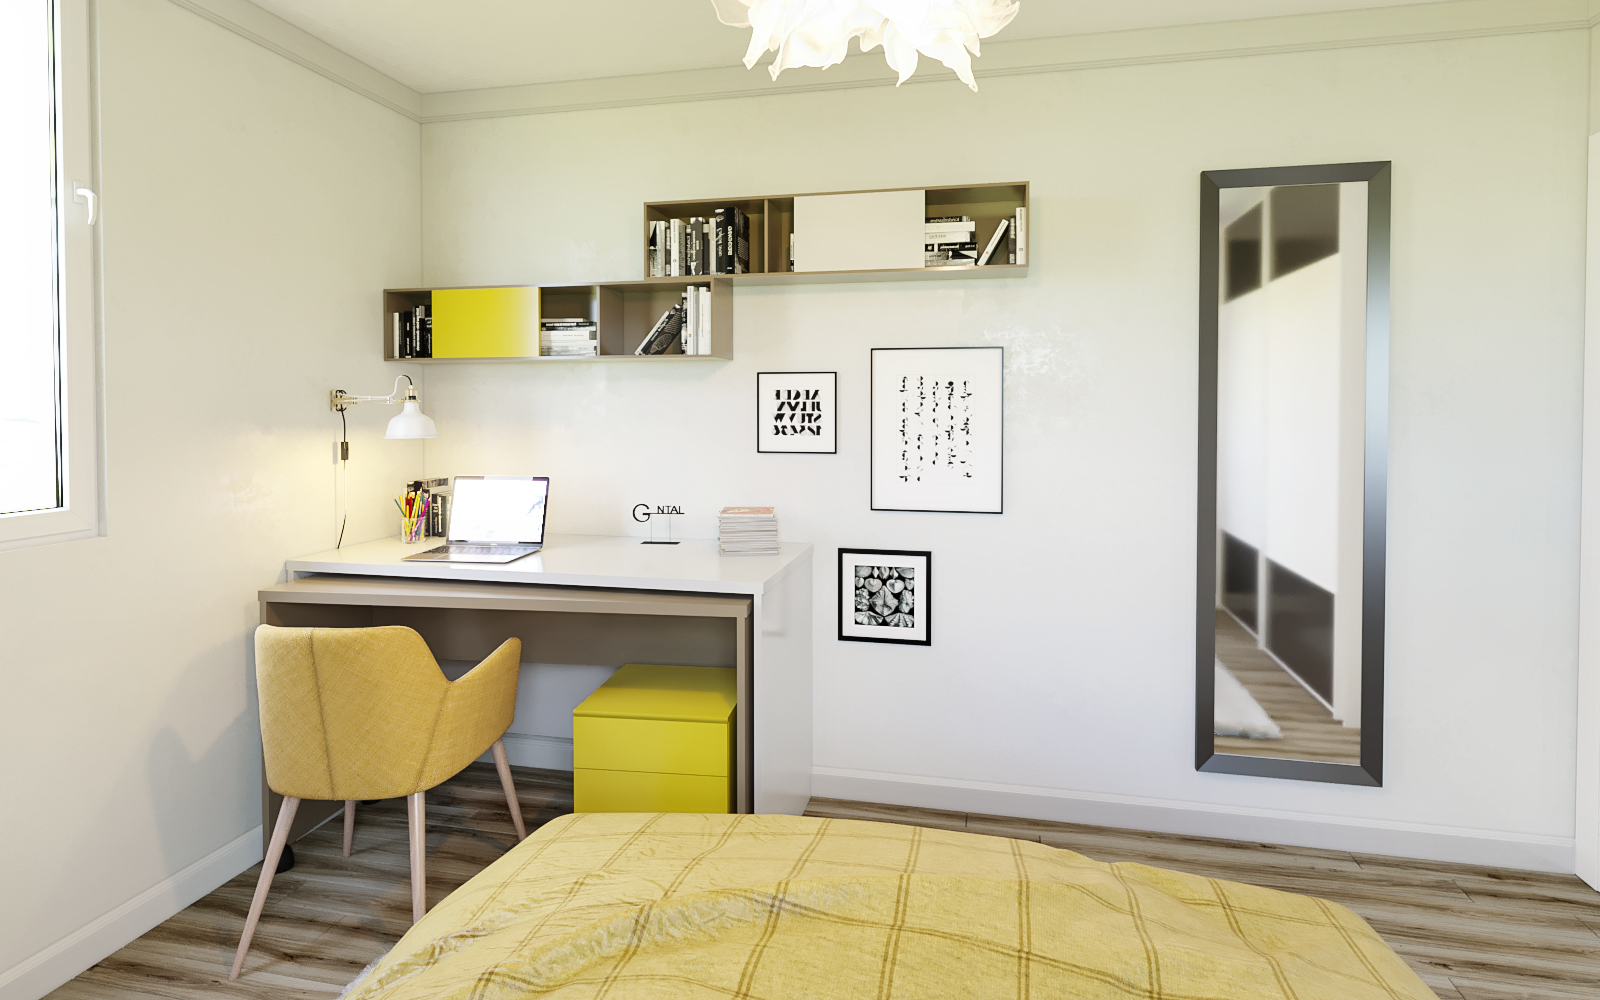 imagen de Dormitorio numero 1 en 3d max corona render